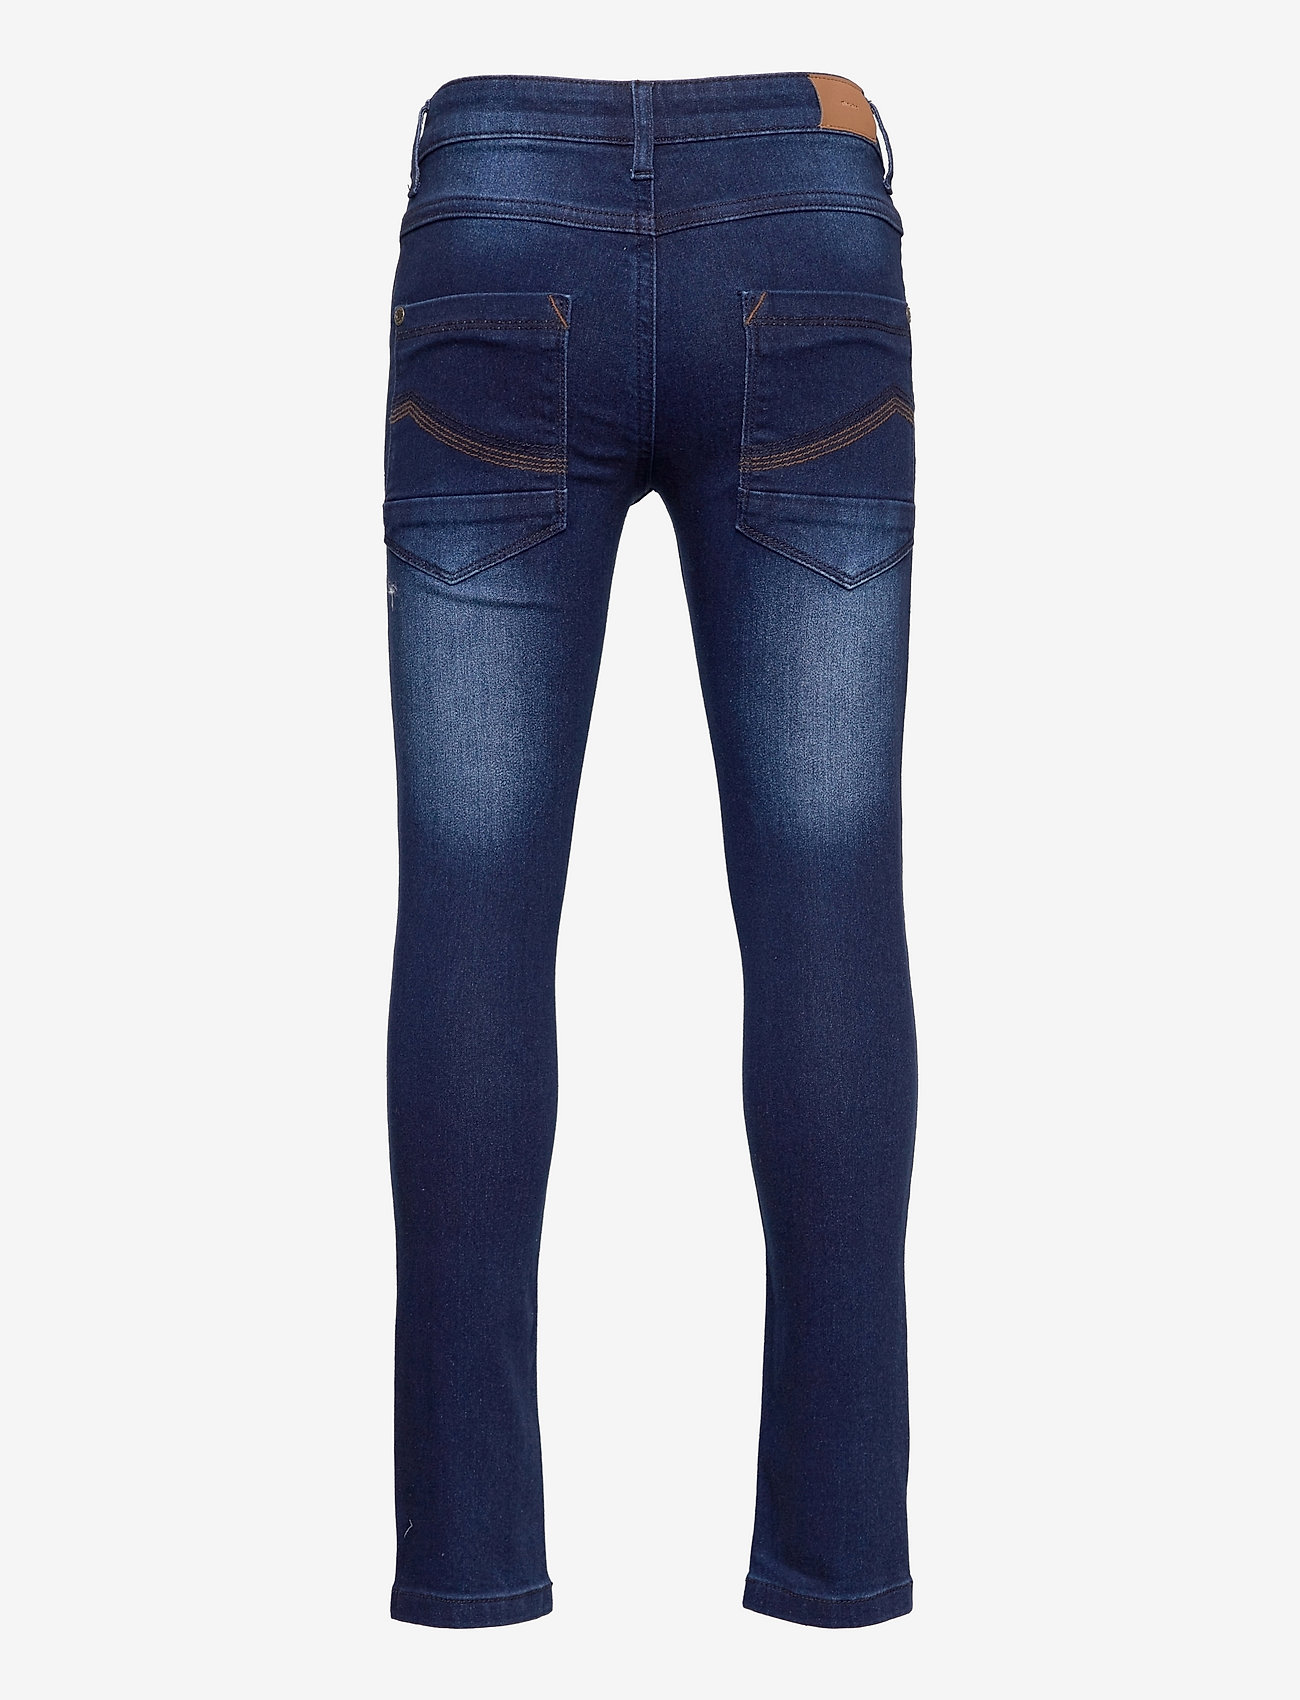 Minymo - Jeans boy stretch slim fit - skinny jeans - dark blue denim - 1